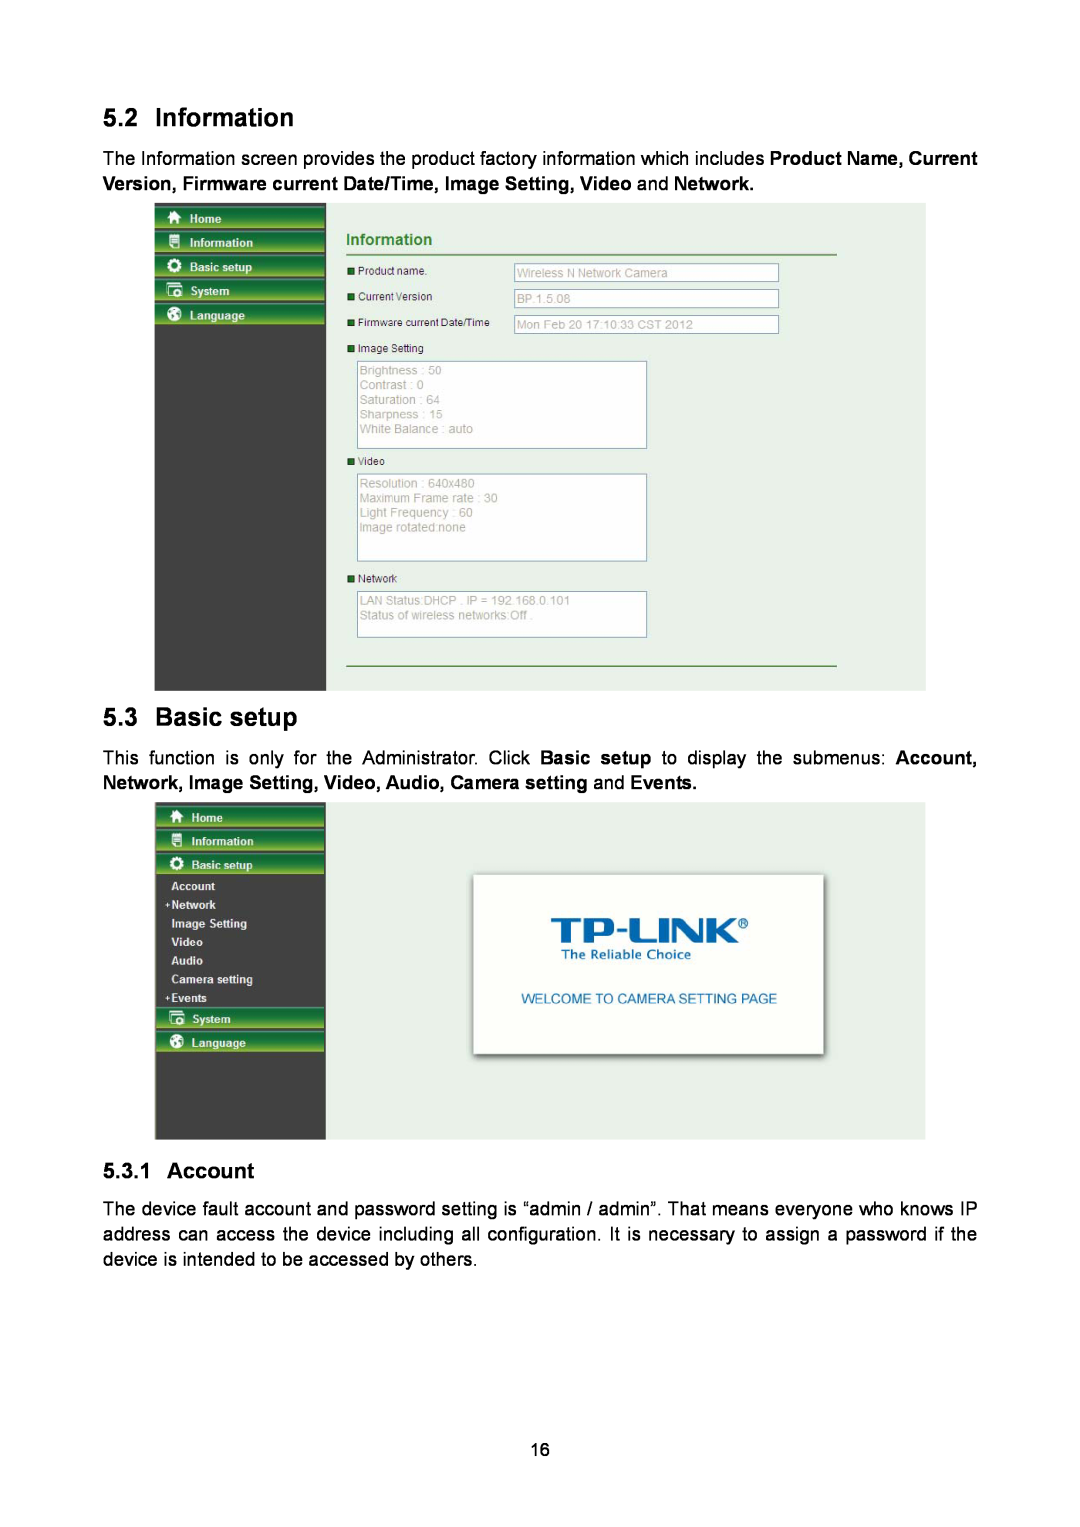 TP-Link TL-SC2020N manual Information, Basic setup, Account 